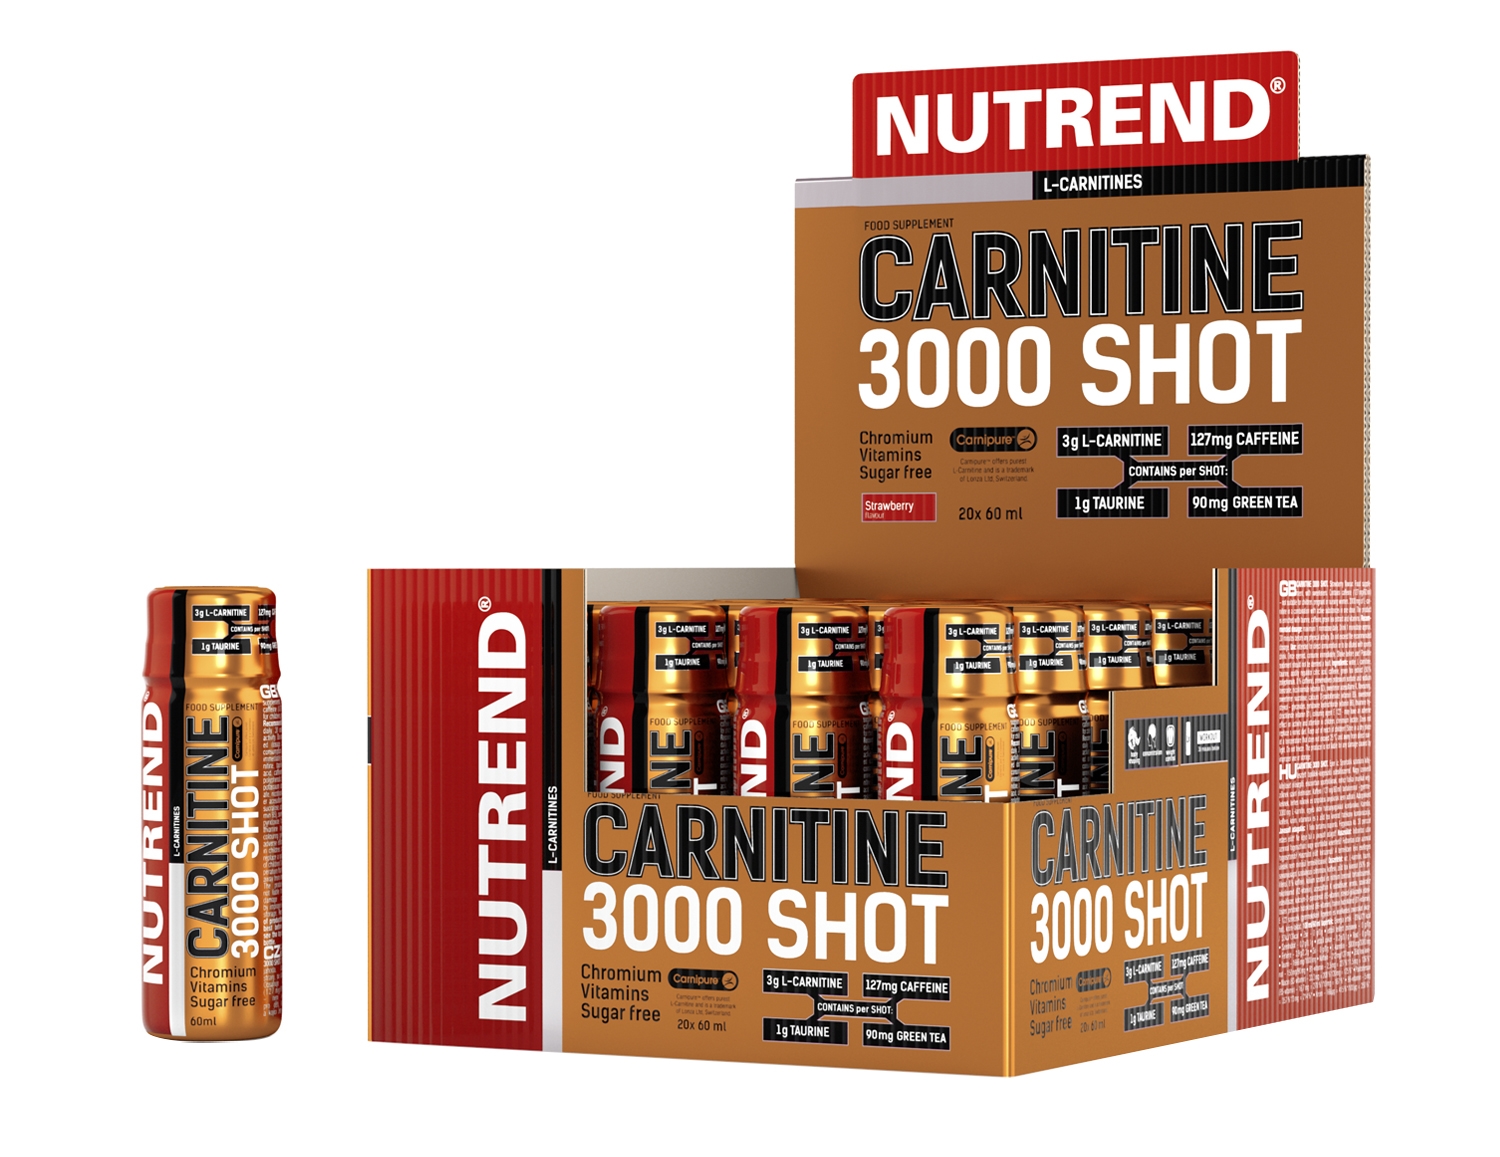 NUTREND CARNITINE 3000 SHOT,box-20 lahviček á 60ml, jahoda Typ: shoty, určení: příprava na sport, použití: před výkonem